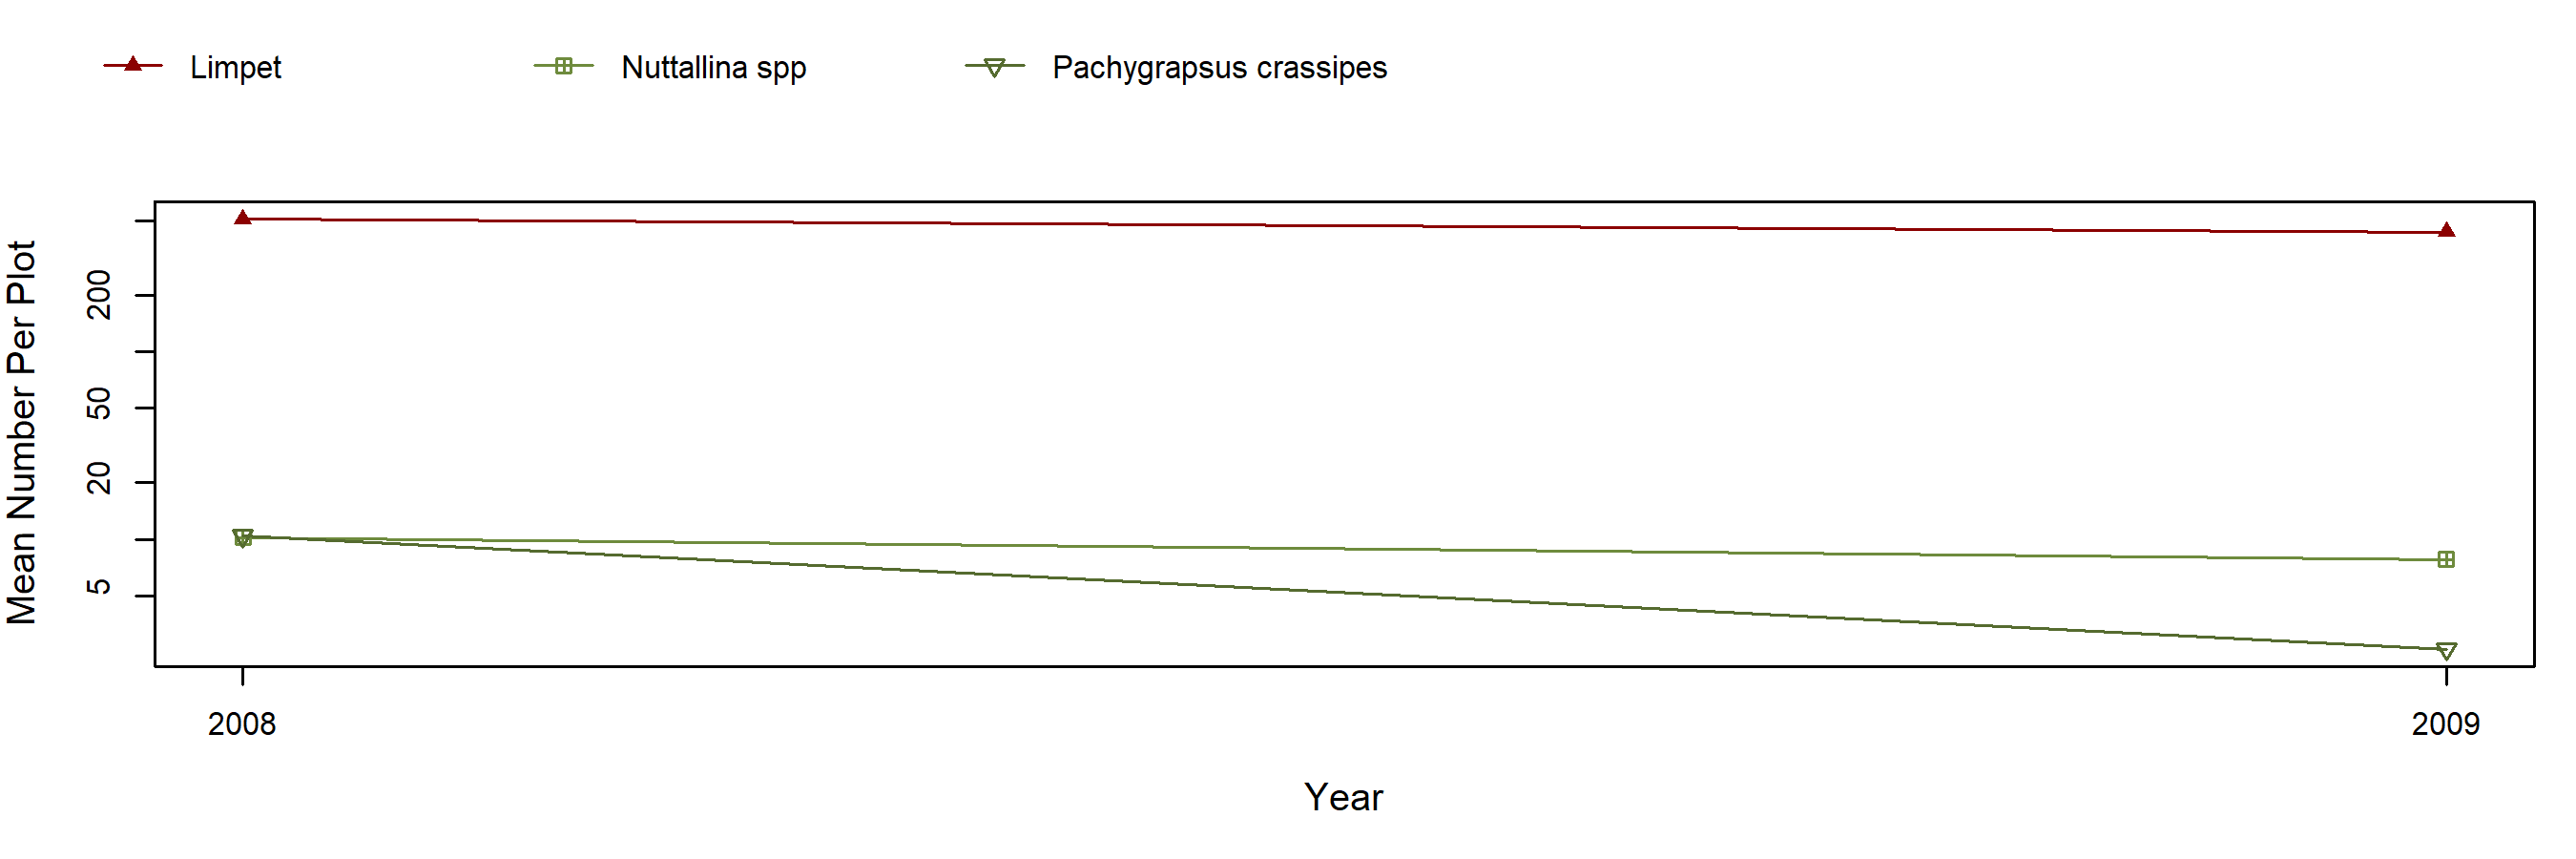 Diablo Mytilus trend plot